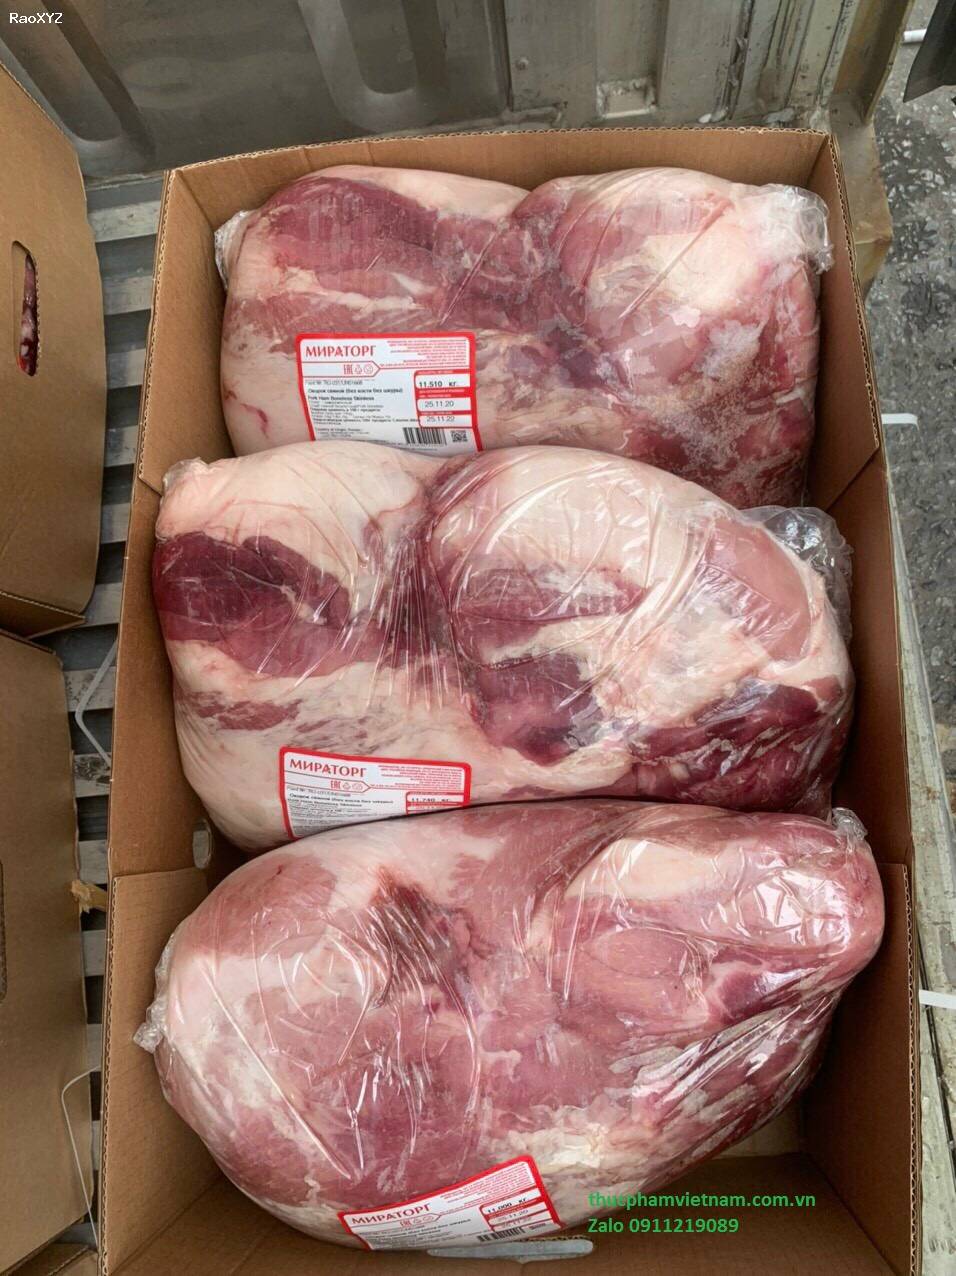 Bảng giá thịt heo đông lạnh - Thịt nạc đùi heo giá bao nhiêu?